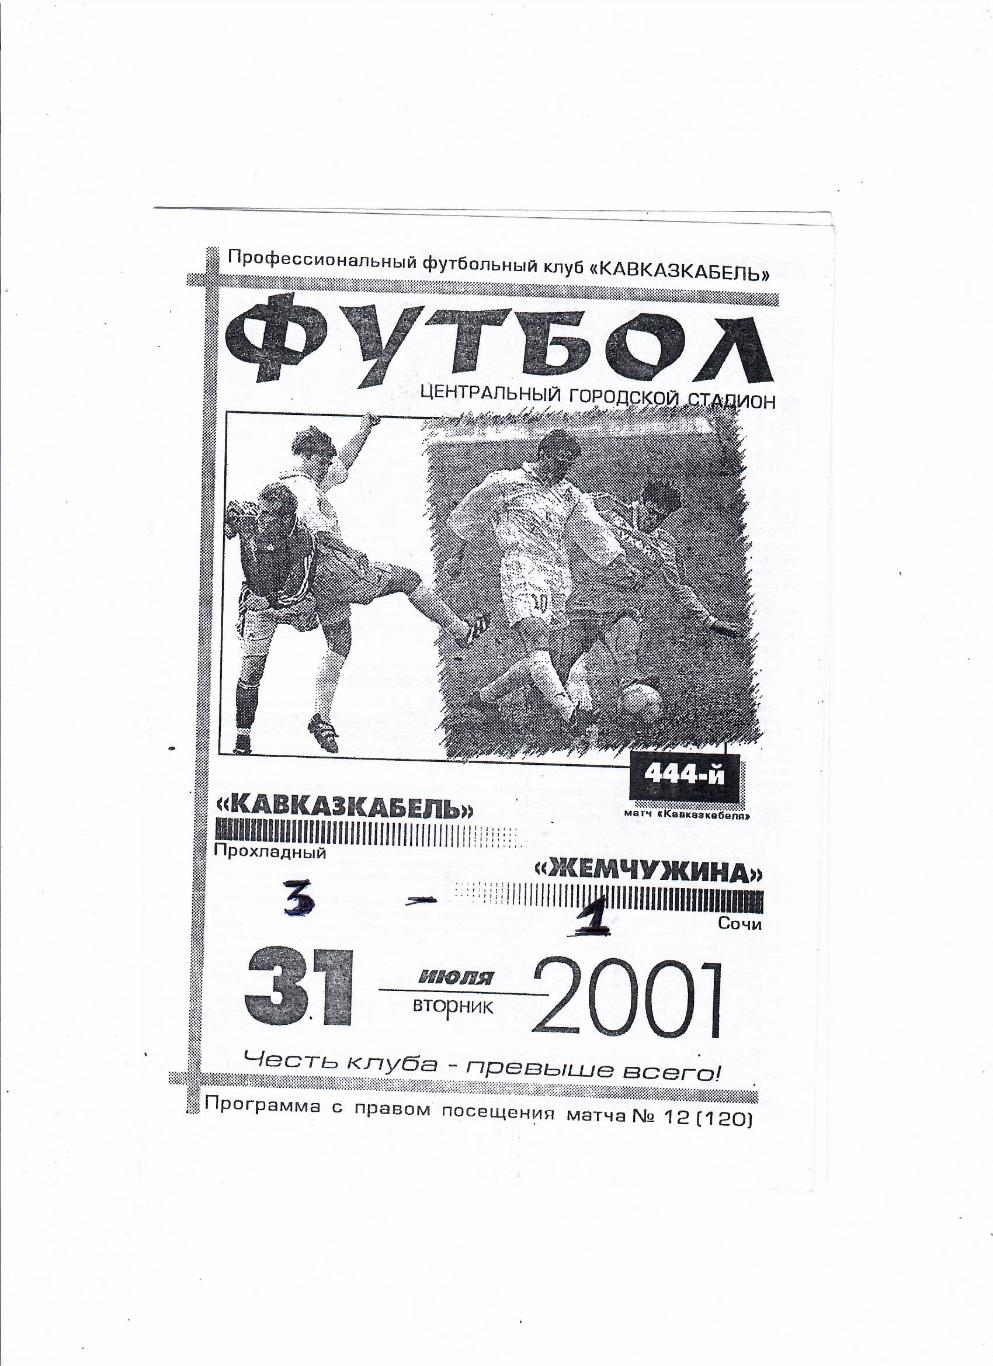 Кавказкабель Прохладный-Жемчужина Сочи 2001